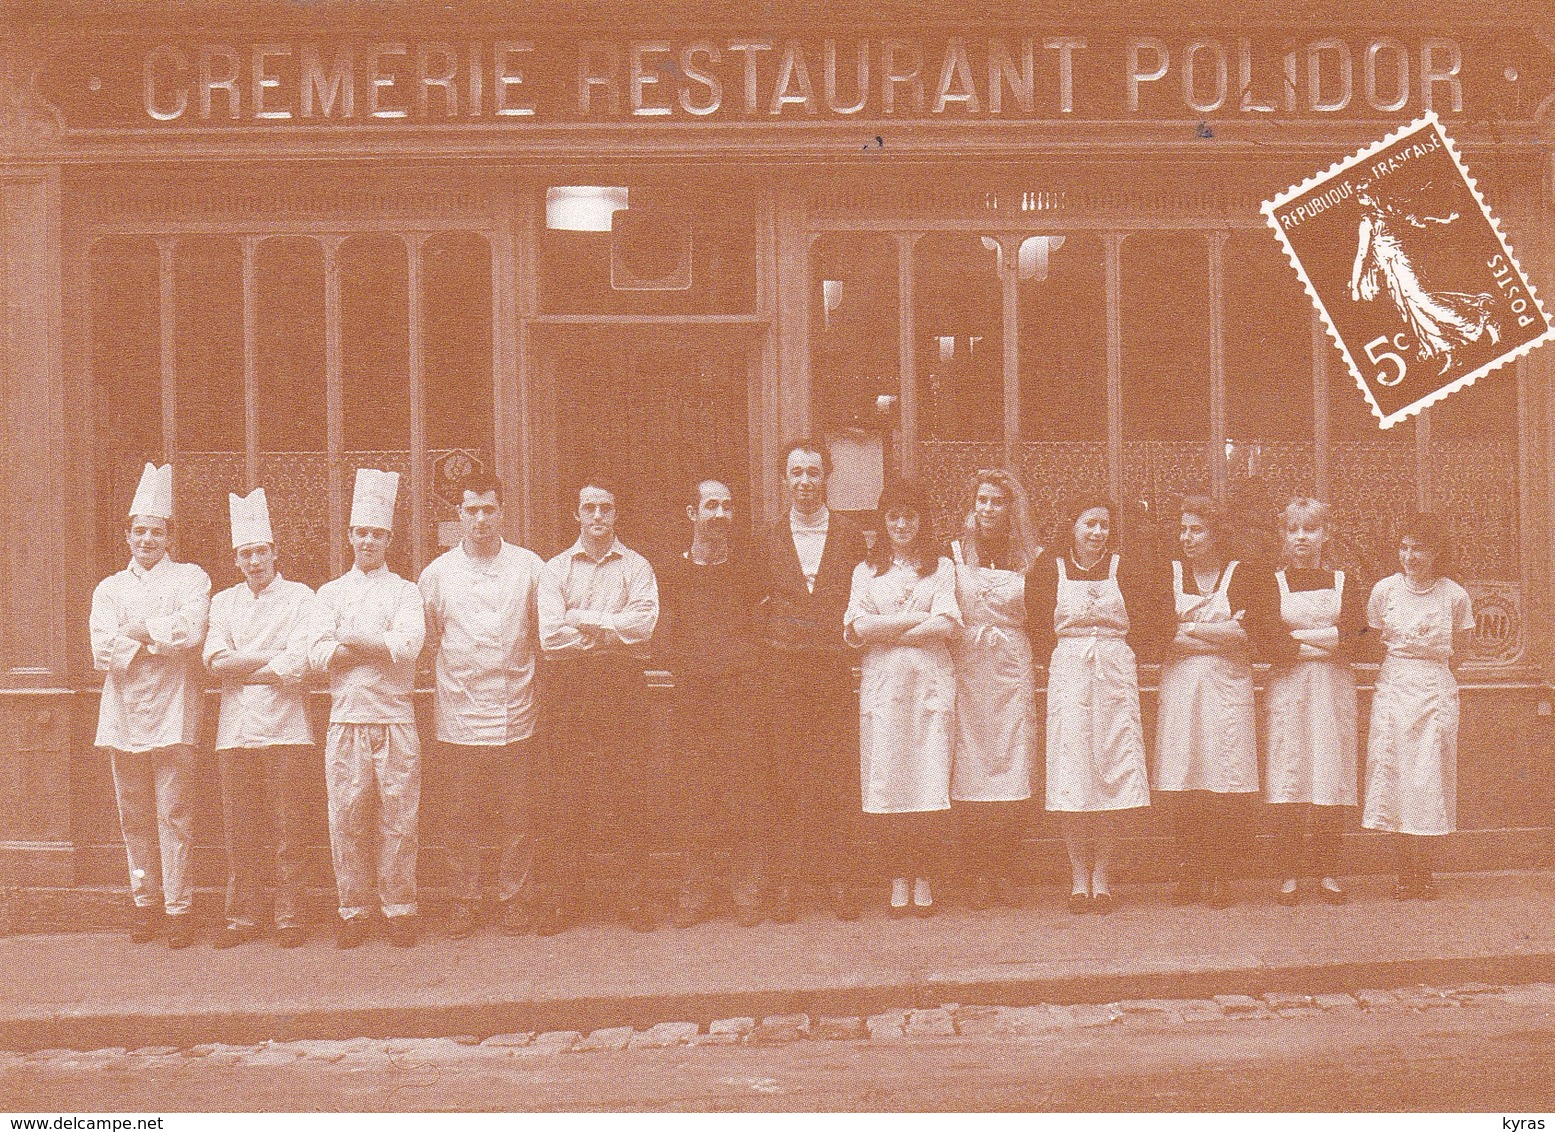 CPM 10x15 .REPRODUCTION  .Crèmerie-Restaurant POLIDOR (41, Rue Monsieur Le Prince PARIS 6°) - Ristoranti